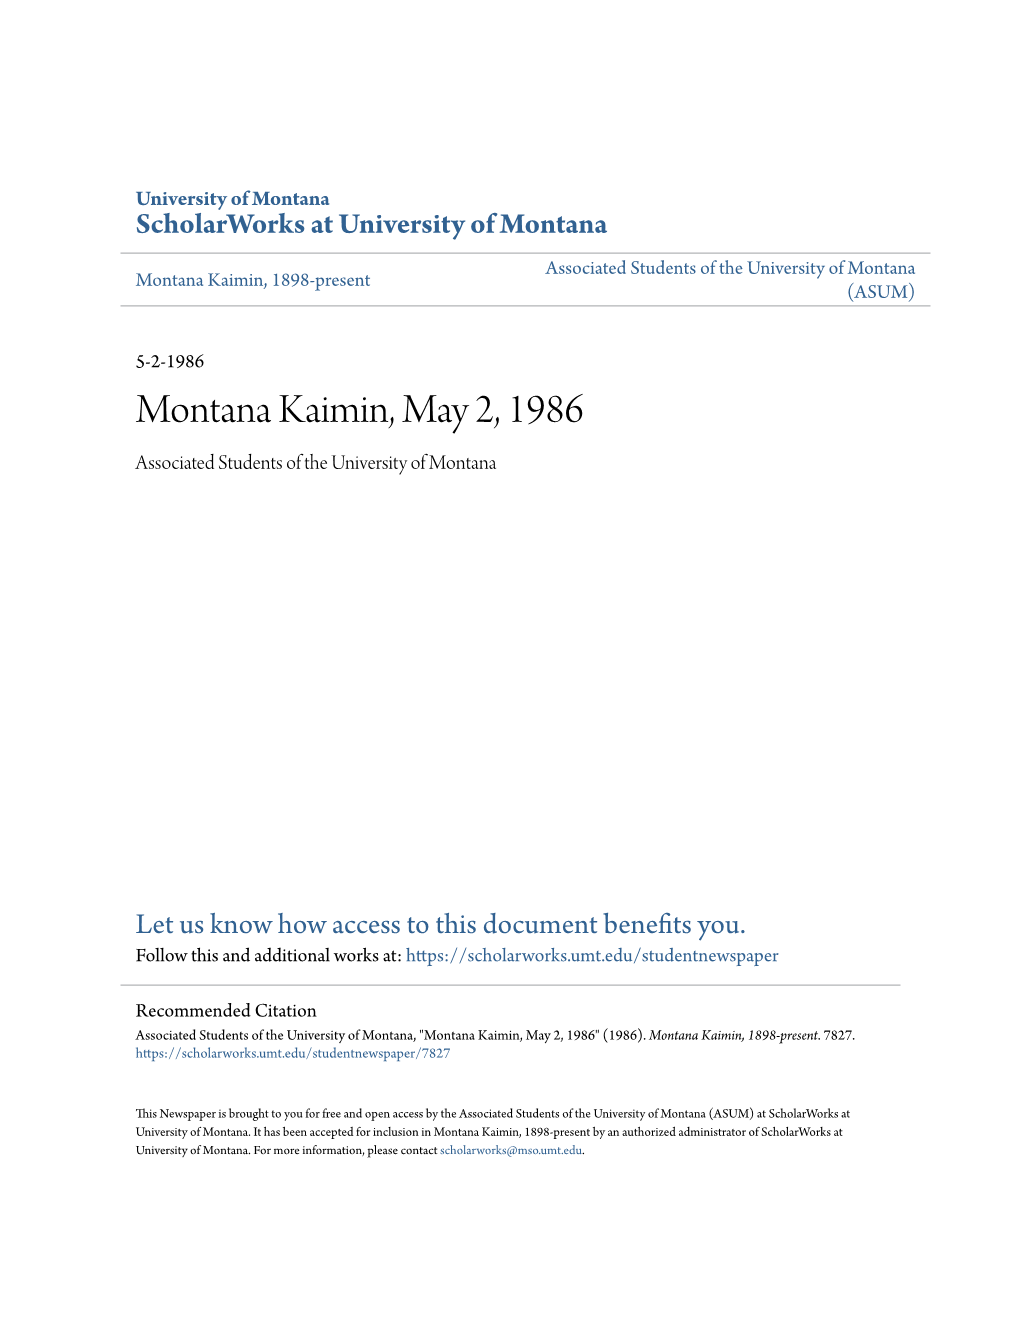 Montana Kaimin, May 2, 1986 Associated Students of the University of Montana